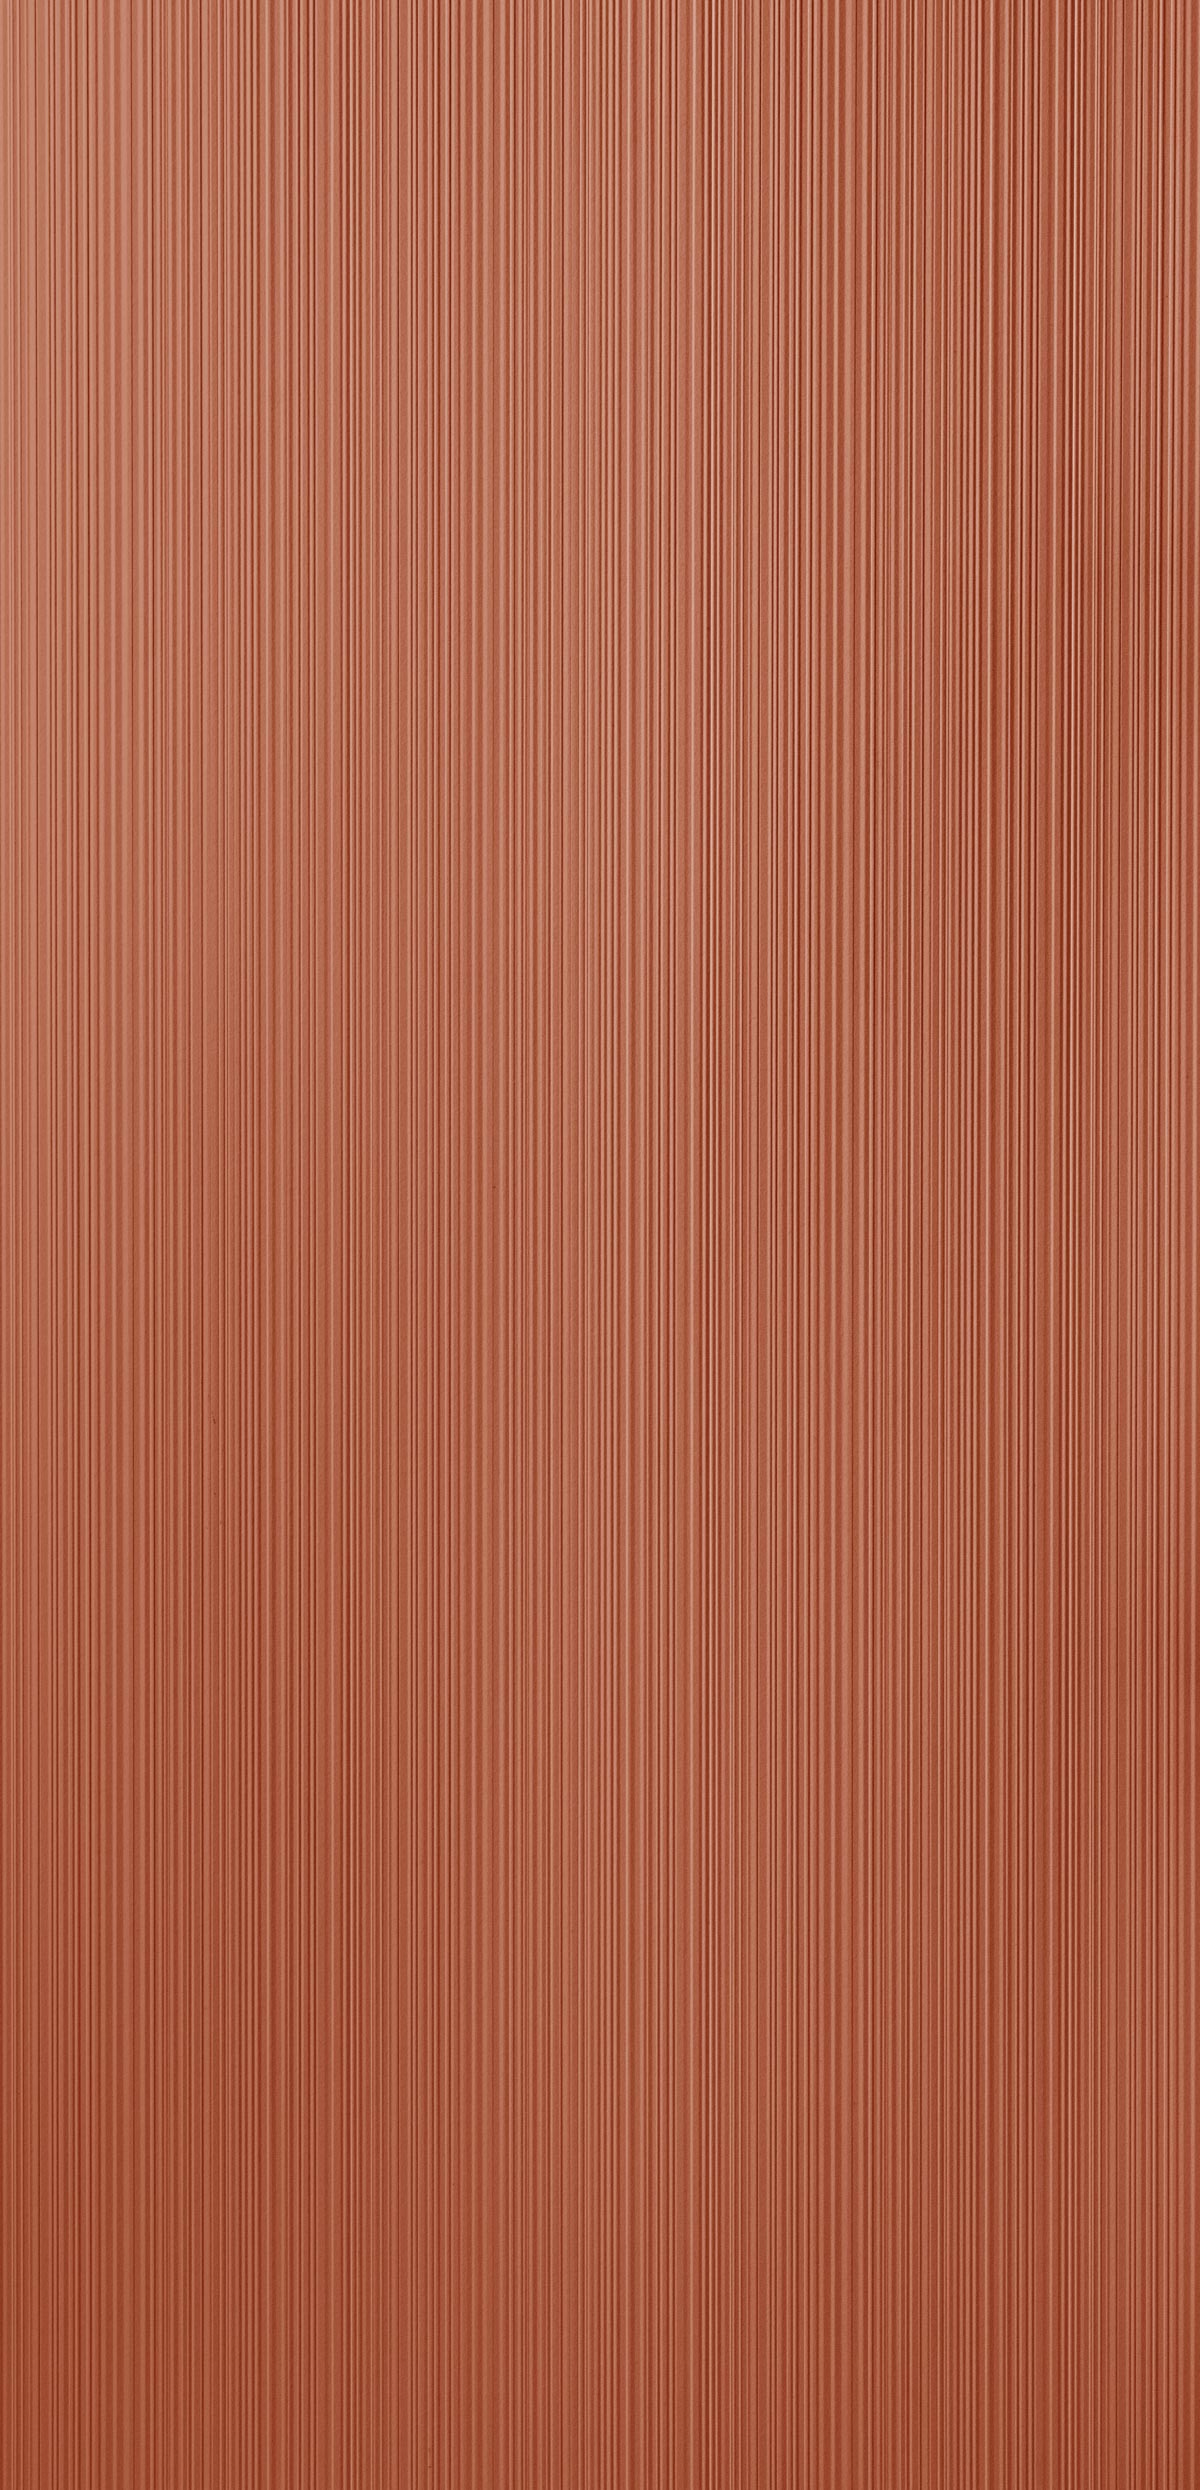 Lines Cognac 022-panel